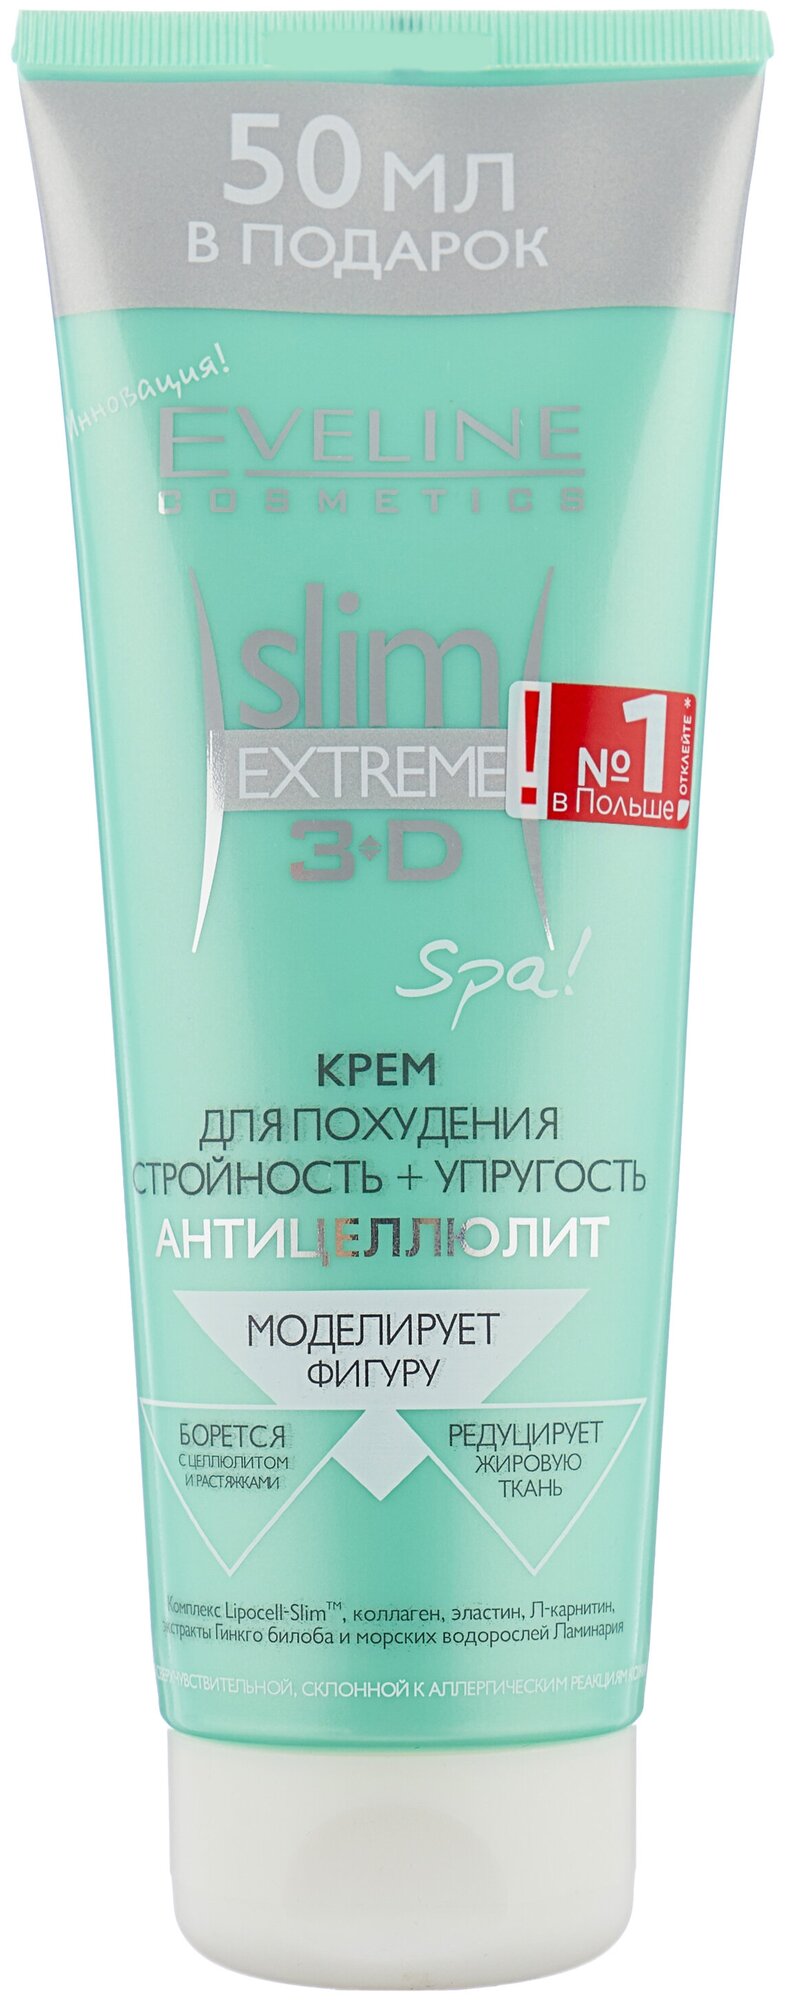 Eveline Cosmetics крем для похудения Стройность упругость антицеллюлит Slim Extreme 3D